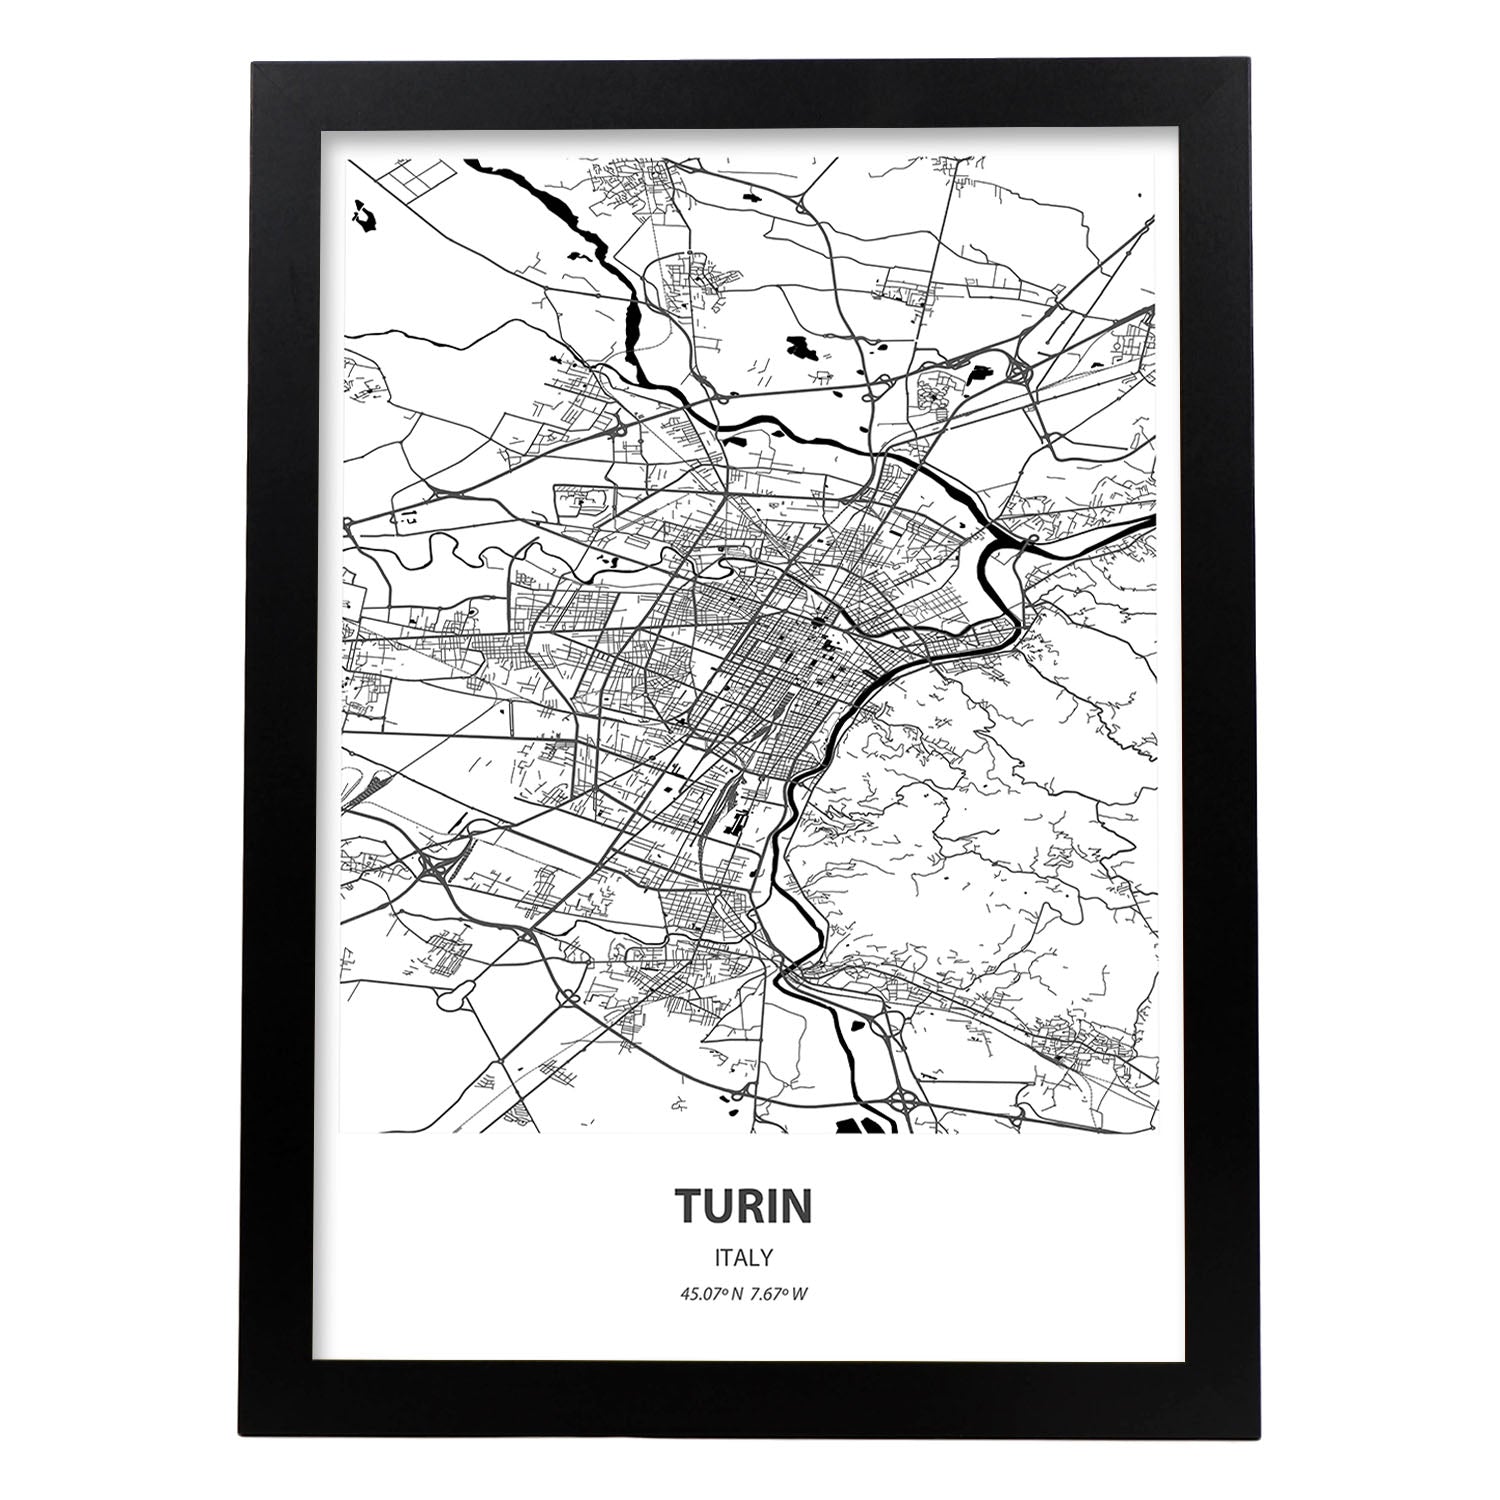 Poster con mapa de Turin - Italia. Láminas de ciudades de Italia con mares y ríos en color negro.-Artwork-Nacnic-A4-Marco Negro-Nacnic Estudio SL